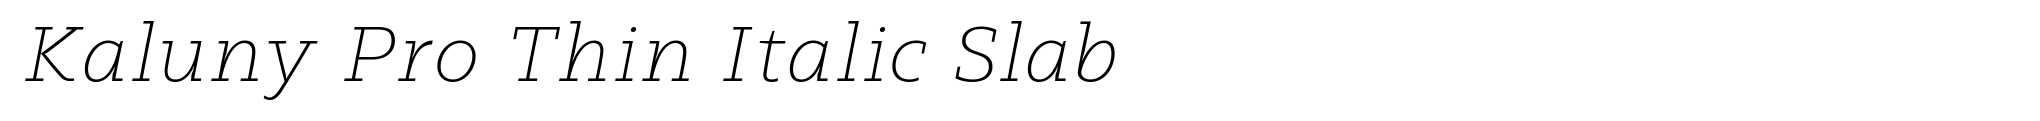 Kaluny Pro Thin Italic Slab image